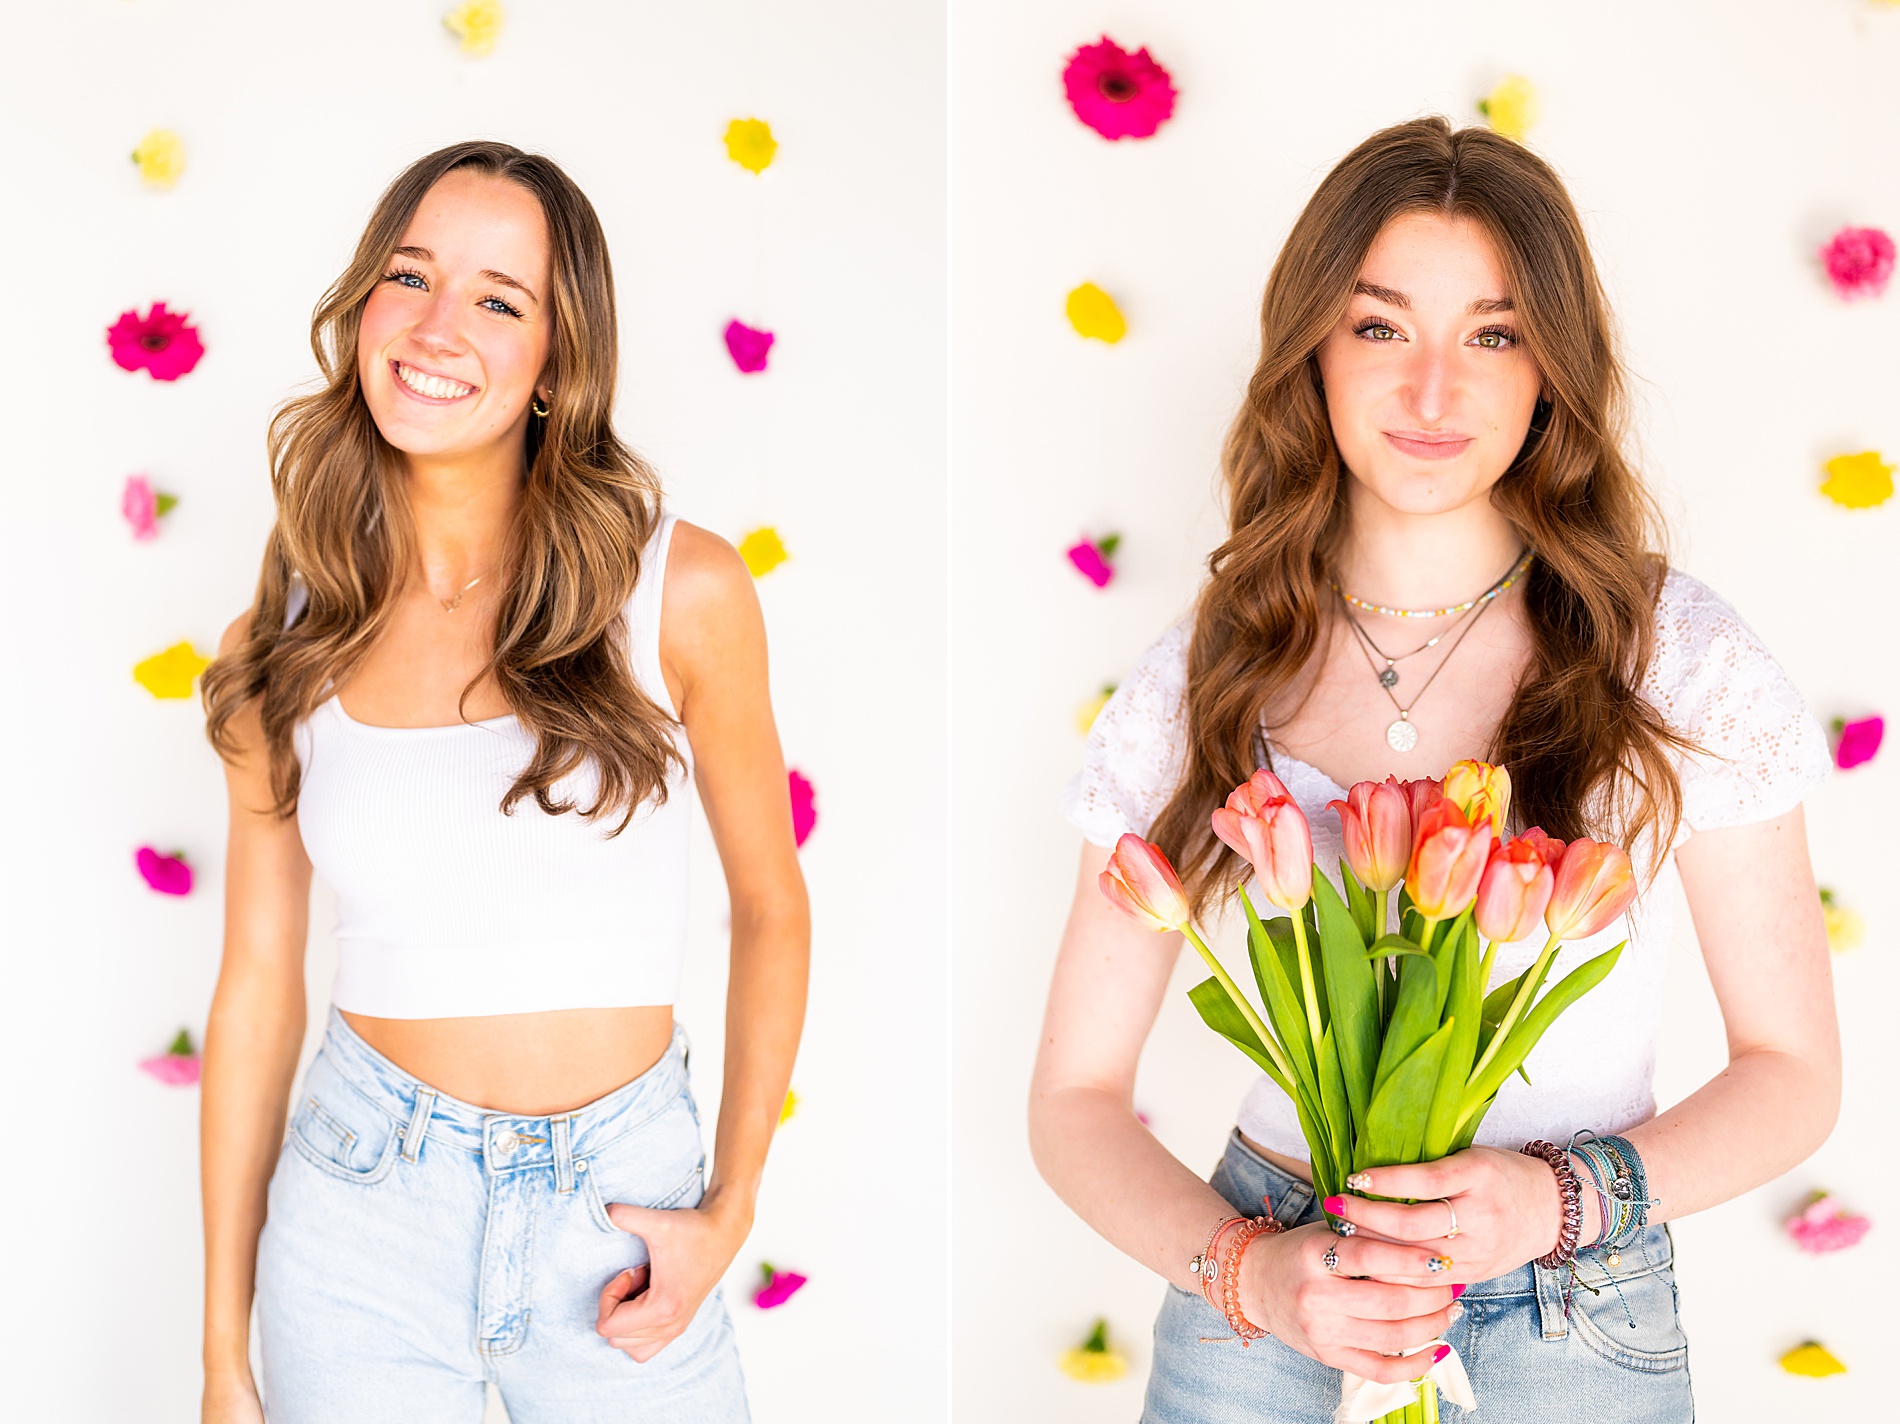 spring photoshoot with senior spokesmodel team